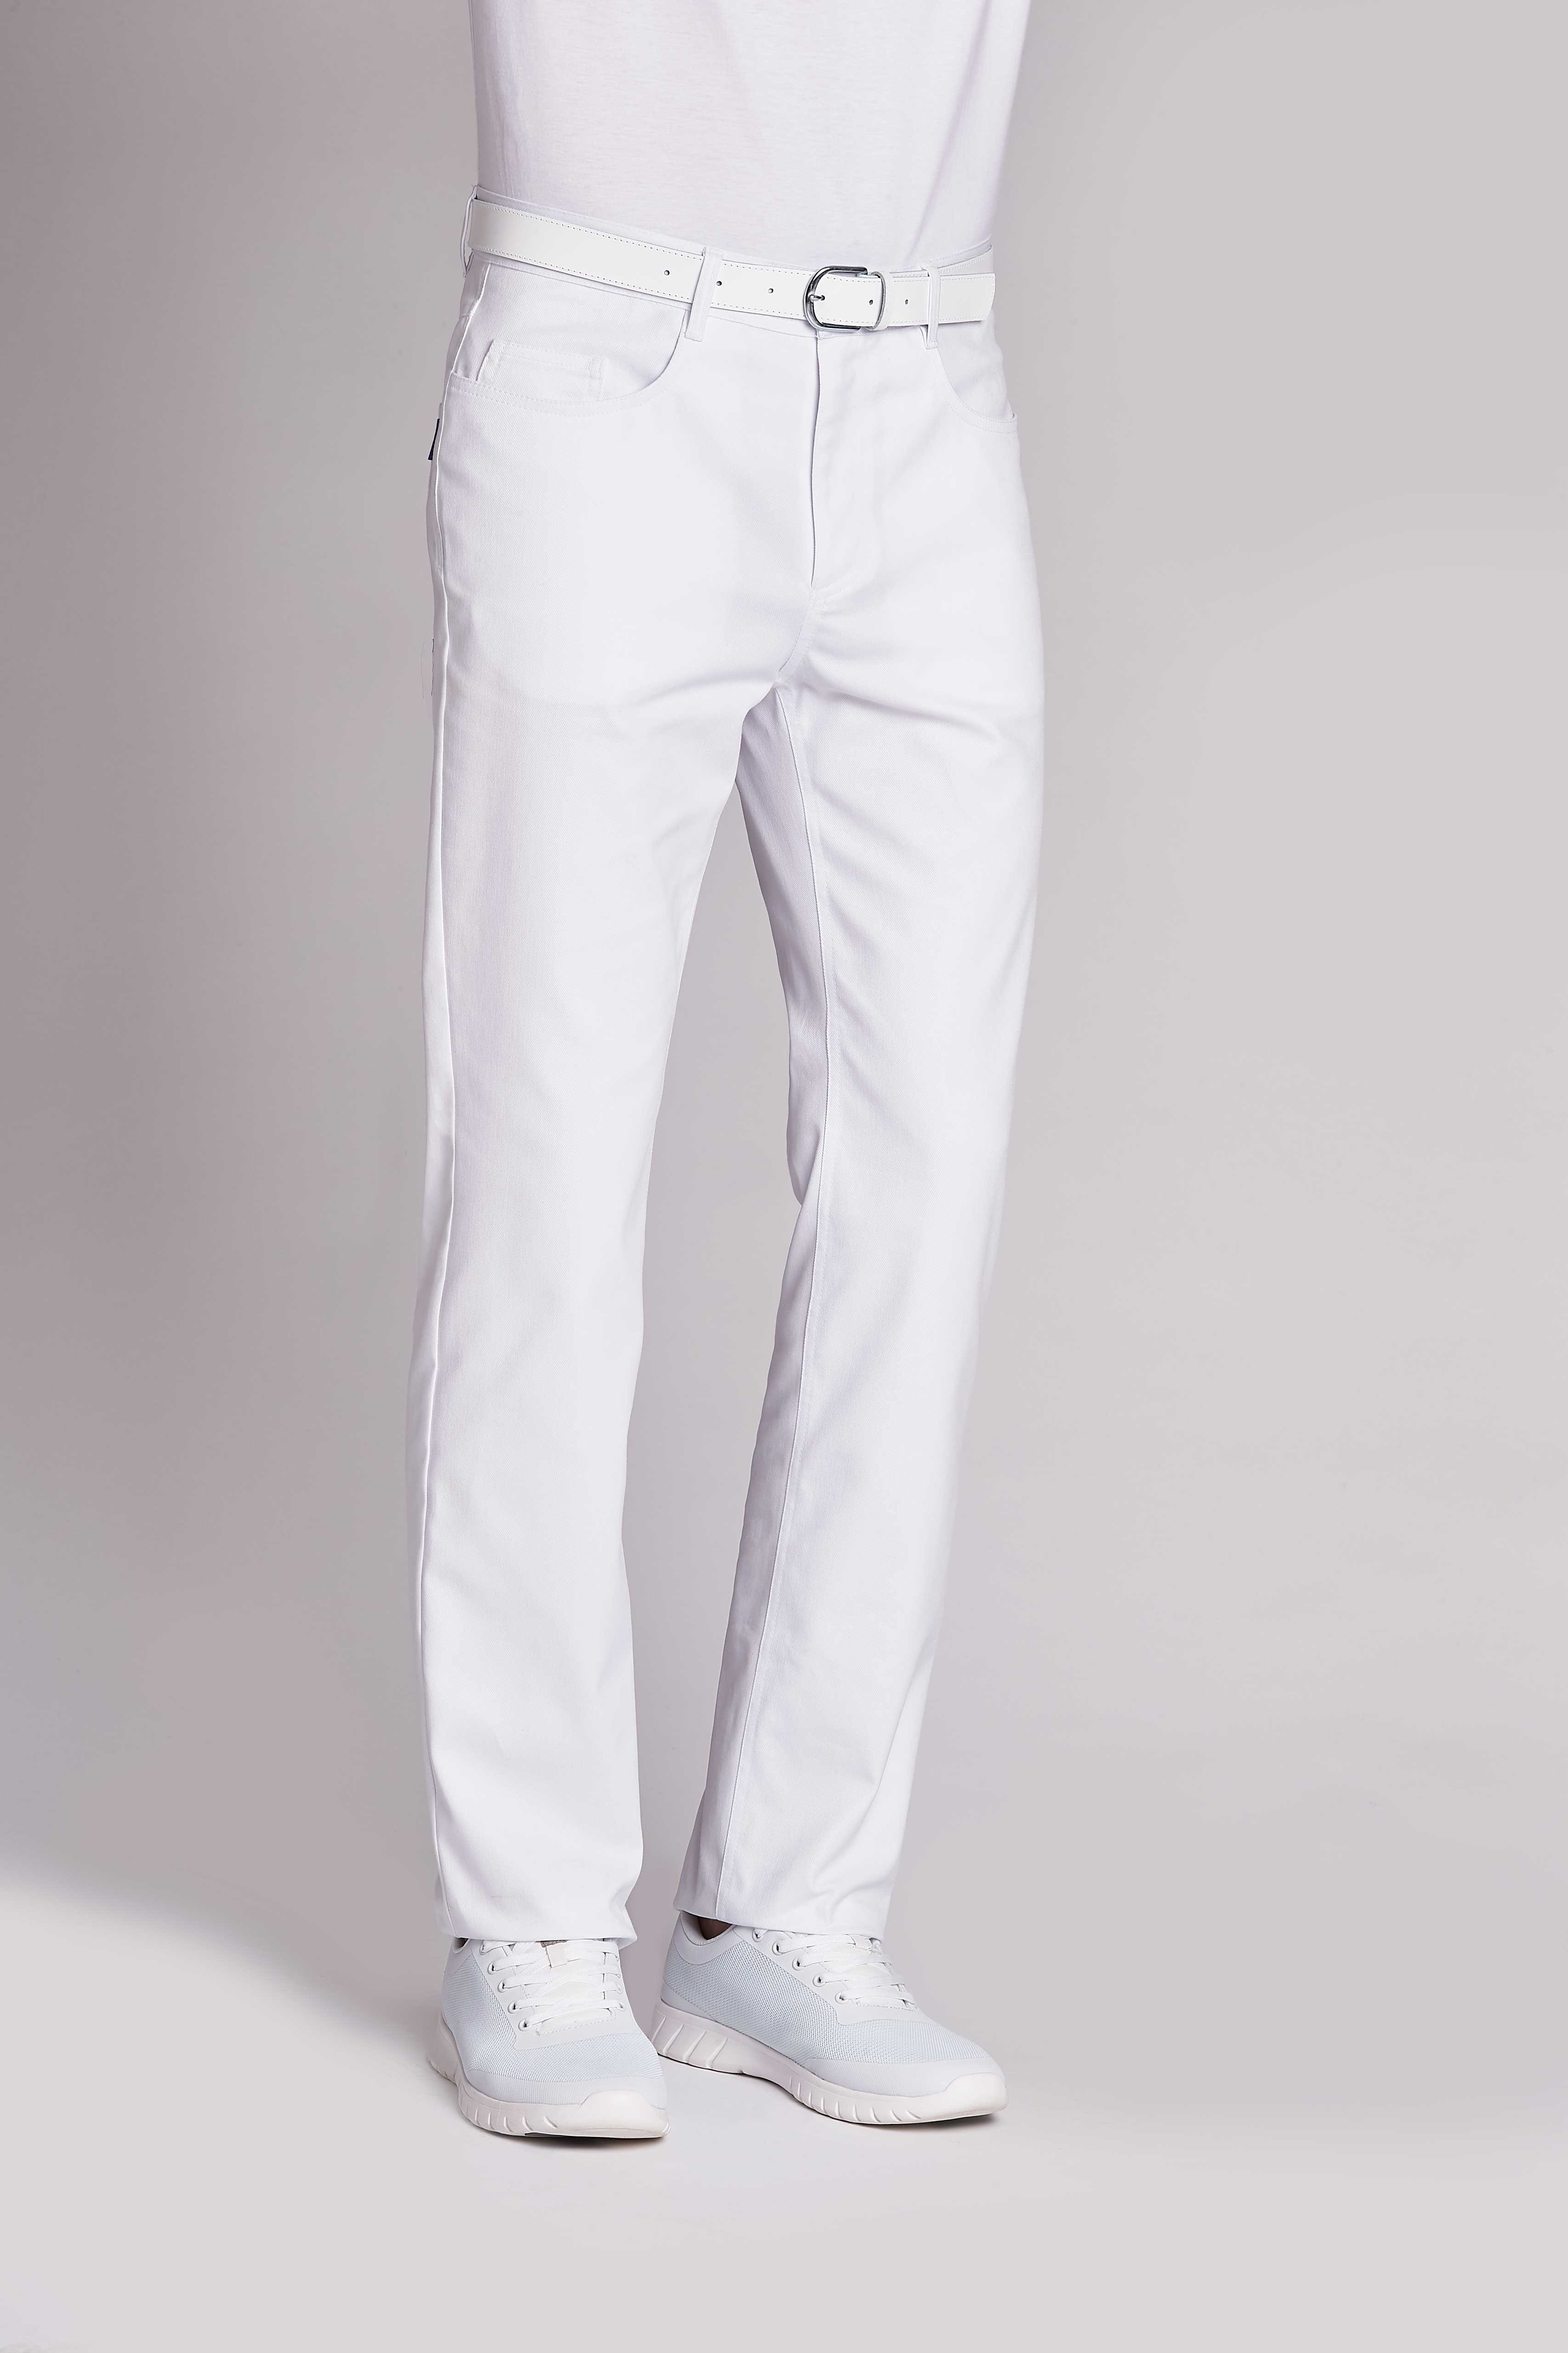 Leiber Arbeitshose Leiber 5-Pocket Stretch weiß, 12/8300-2 Herren-Jeans